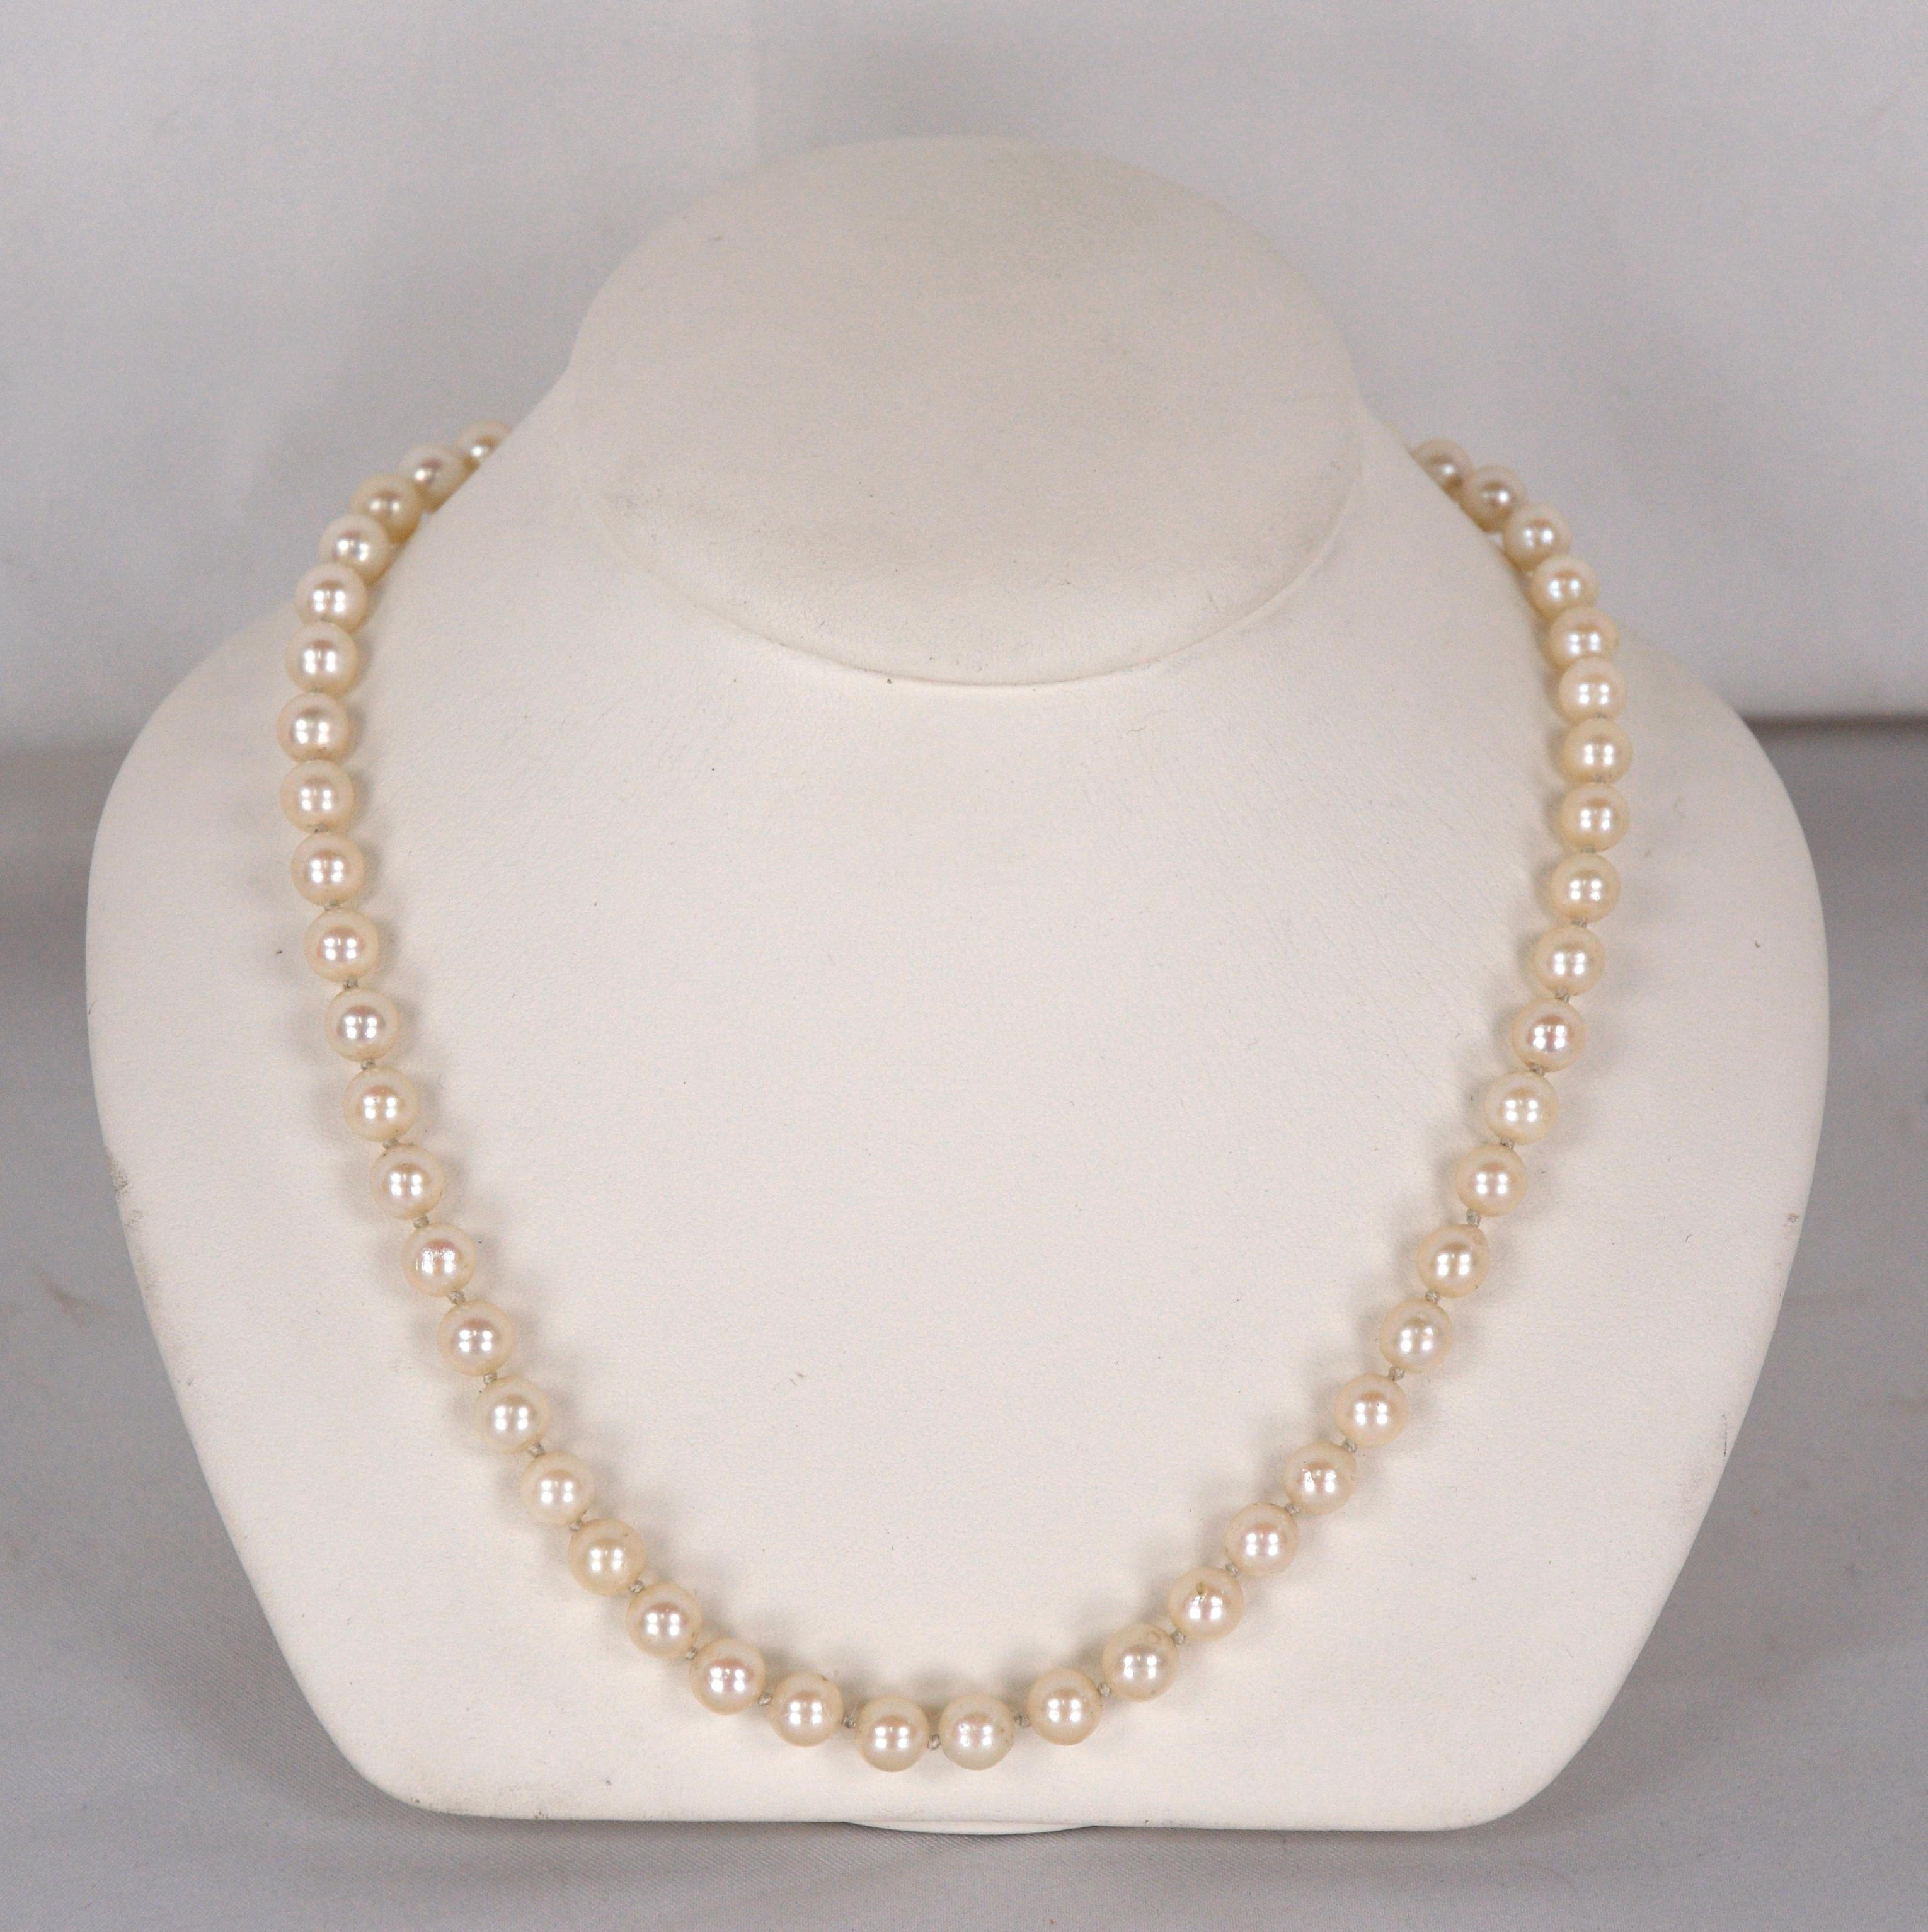 Collier de perles brillantes avec boucles d'oreilles assorties. fermoir en or blanc 14K sur le collier. Les perles ont un diamètre de 7 mm (.275in). Superbe coloration légèrement rose. Les boucles d'oreilles sont des poteaux et des dos jaunes 14K.